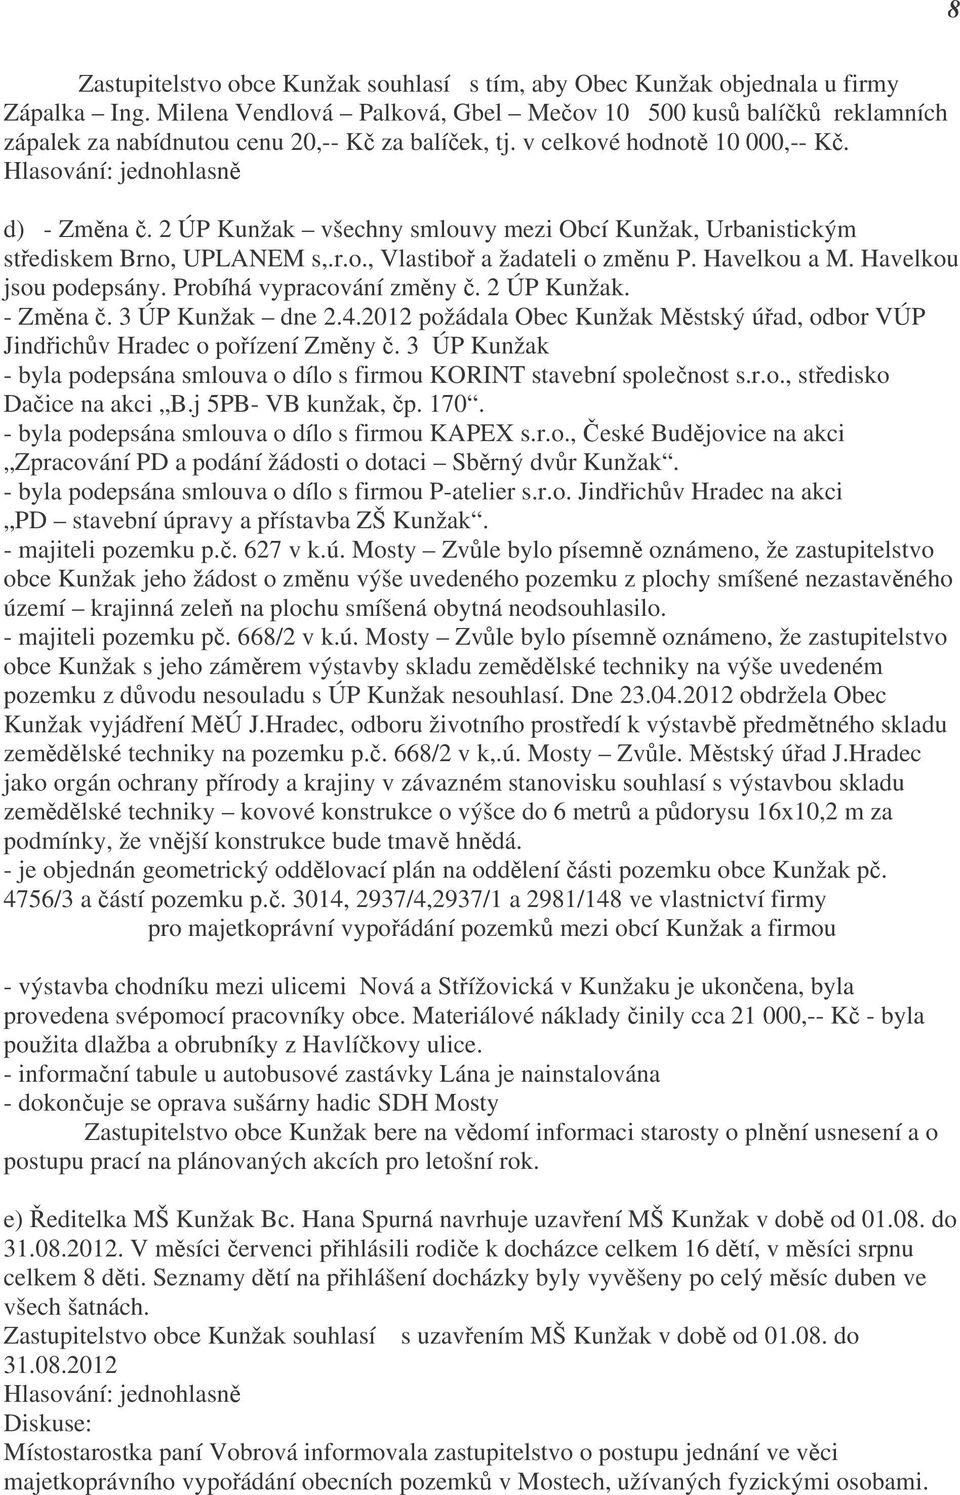 2 ÚP Kunžak všechny smlouvy mezi Obcí Kunžak, Urbanistickým střediskem Brno, UPLANEM s,.r.o., Vlastiboř a žadateli o změnu P. Havelkou a M. Havelkou jsou podepsány. Probíhá vypracování změny č.